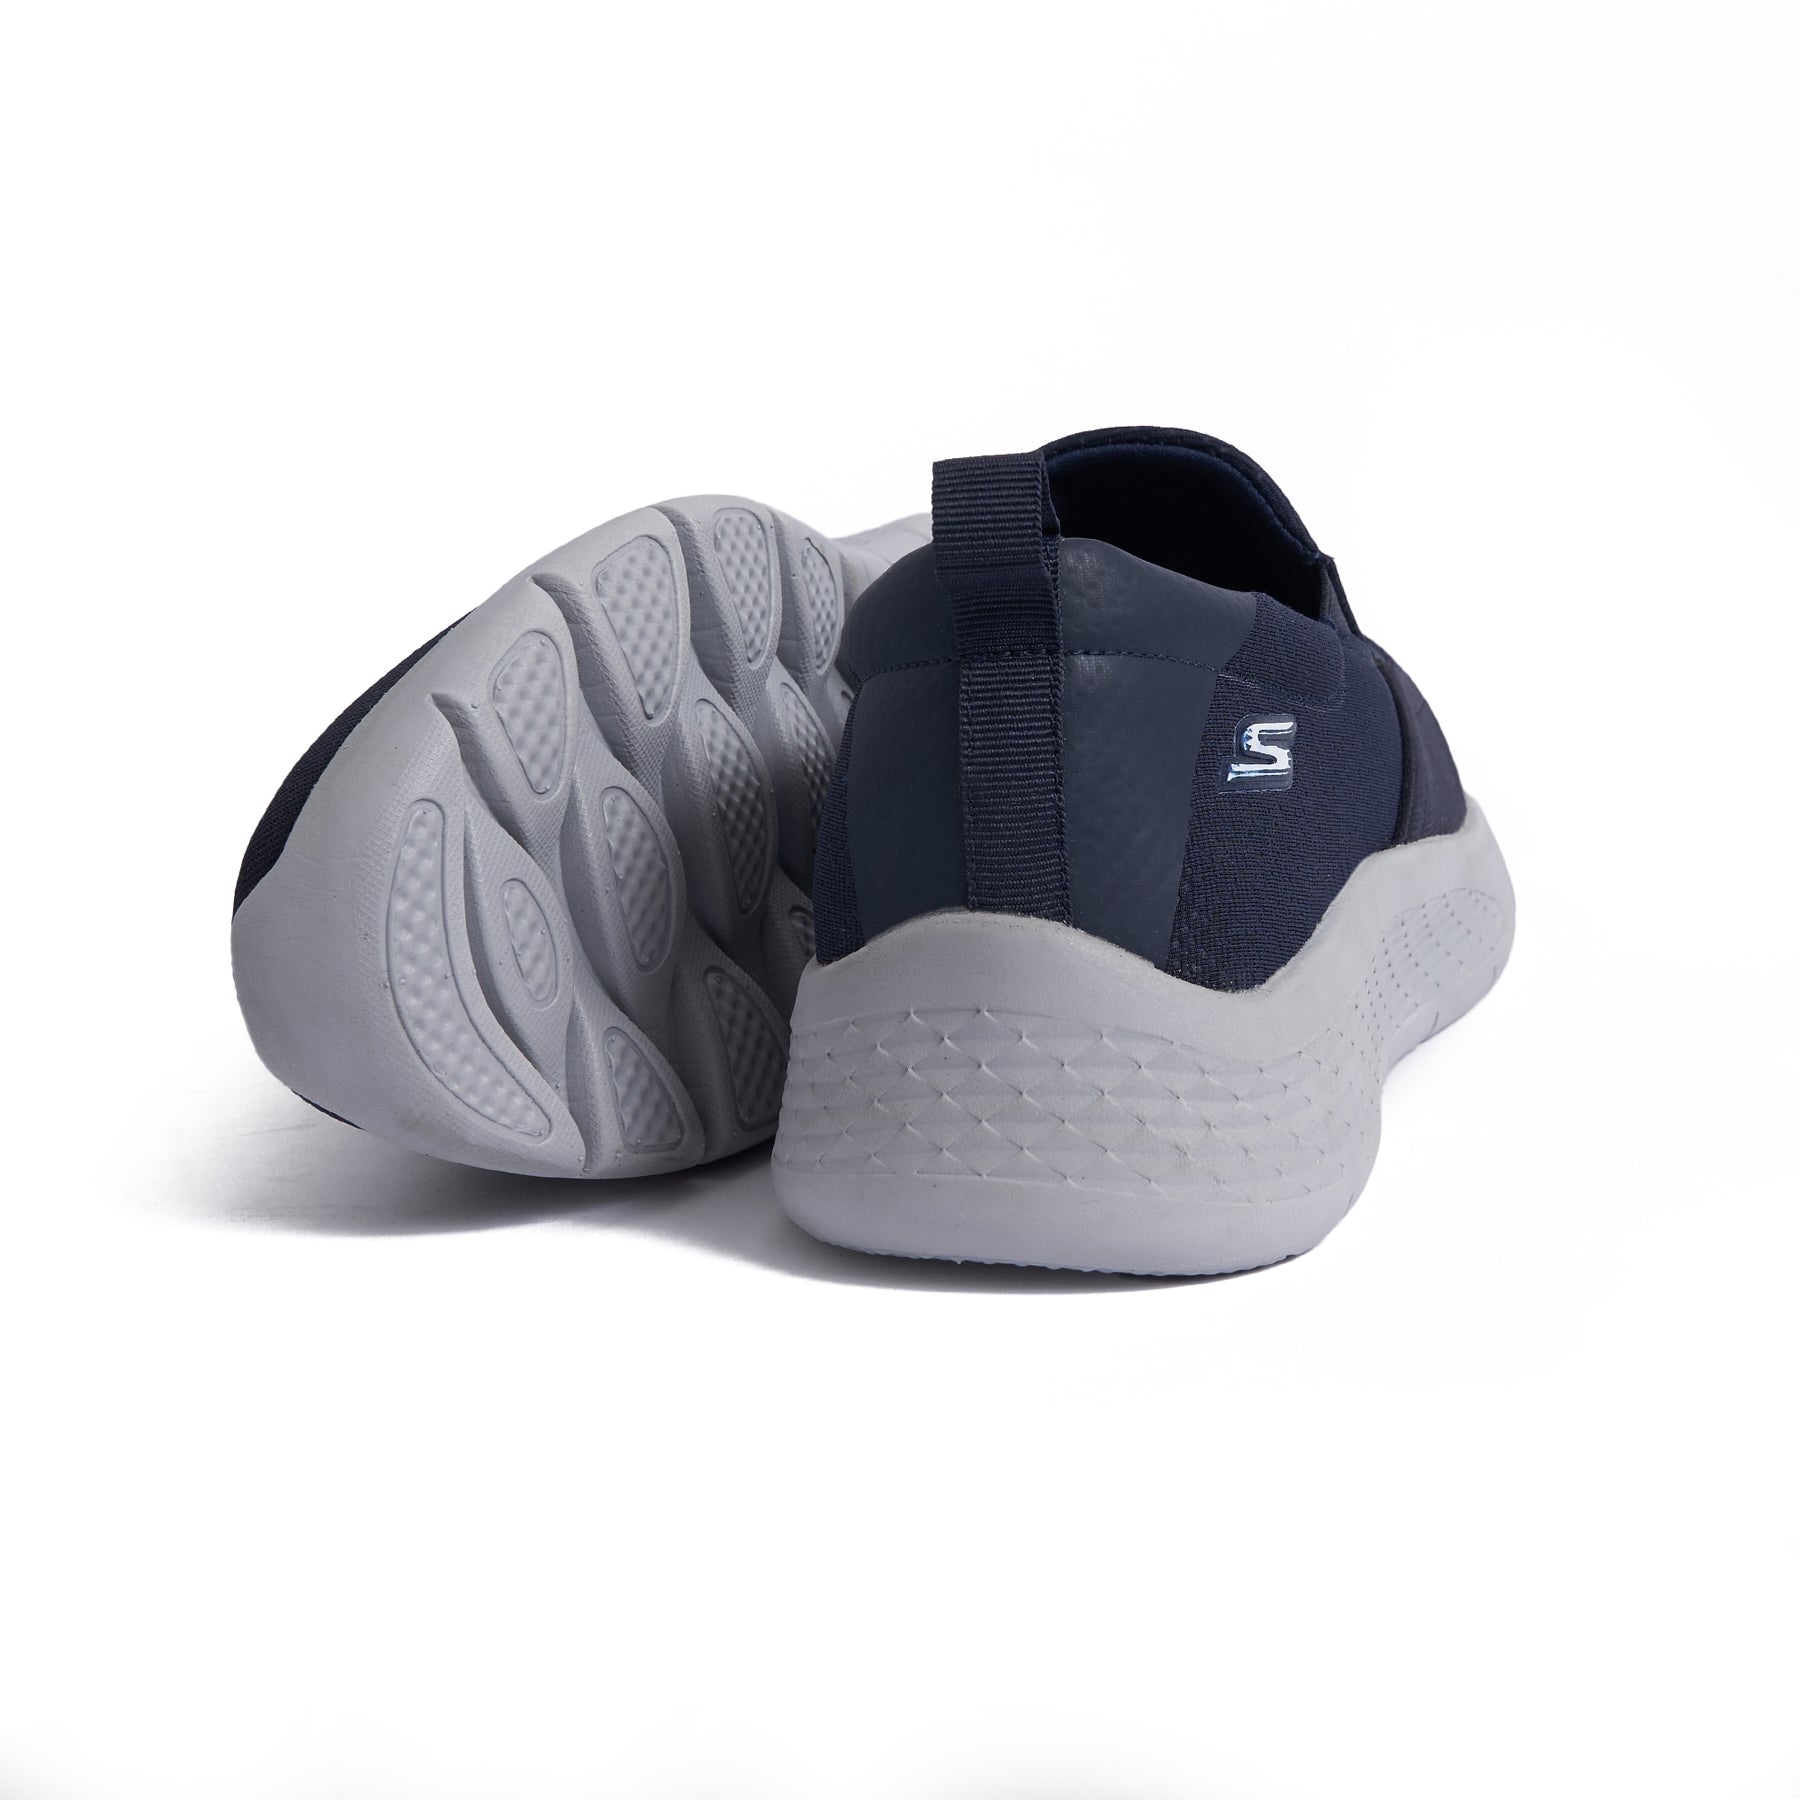 Men's Skechers Stylish and Sleek Sneaker - Navy Model A06